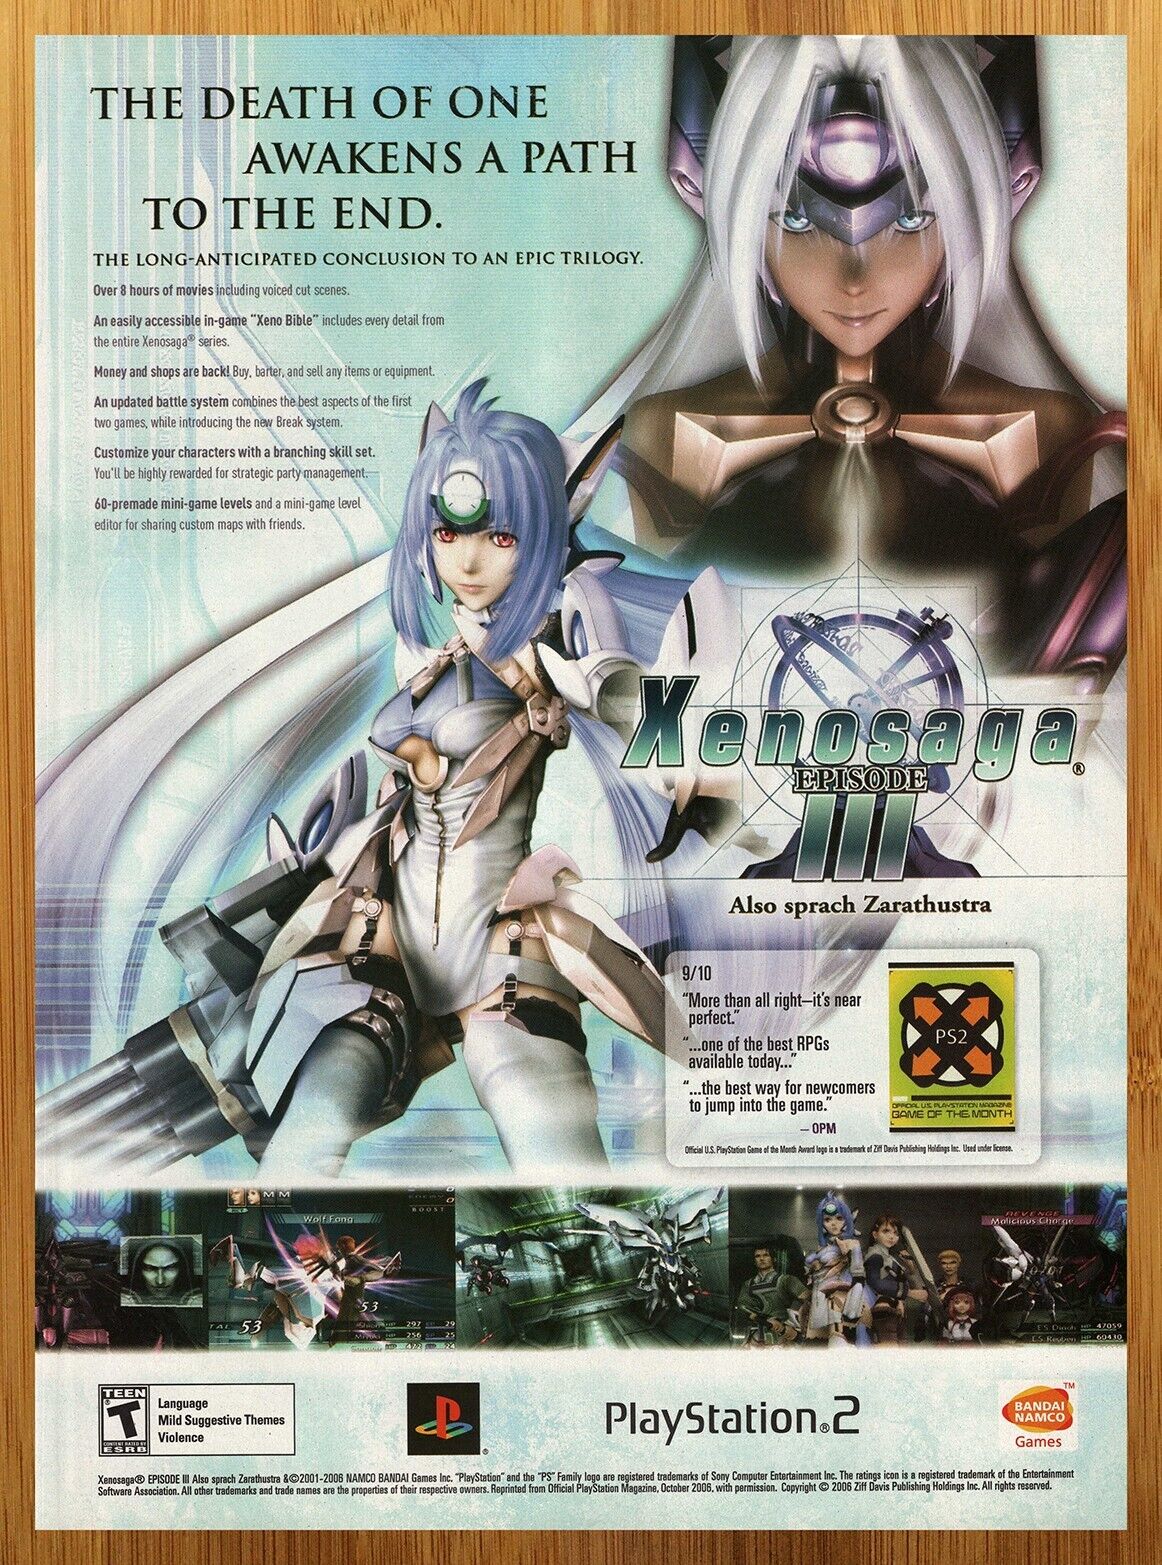 2007 Xenosaga Episode 3 III PS2 Print Ad/Poster Official Video Game Promo Art